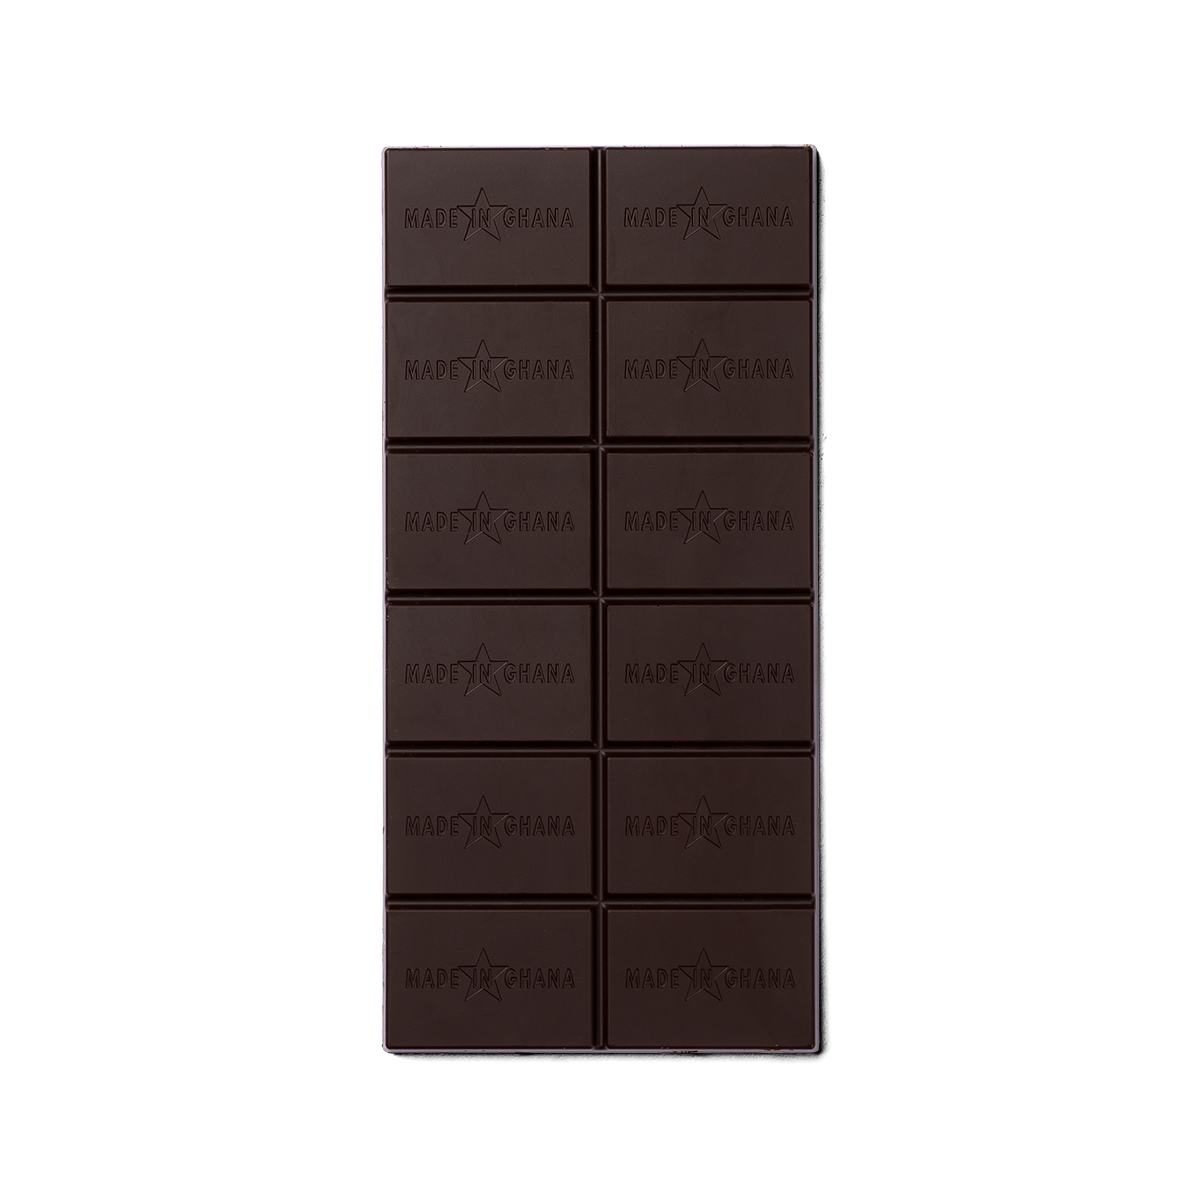 80% organic dark chocolate